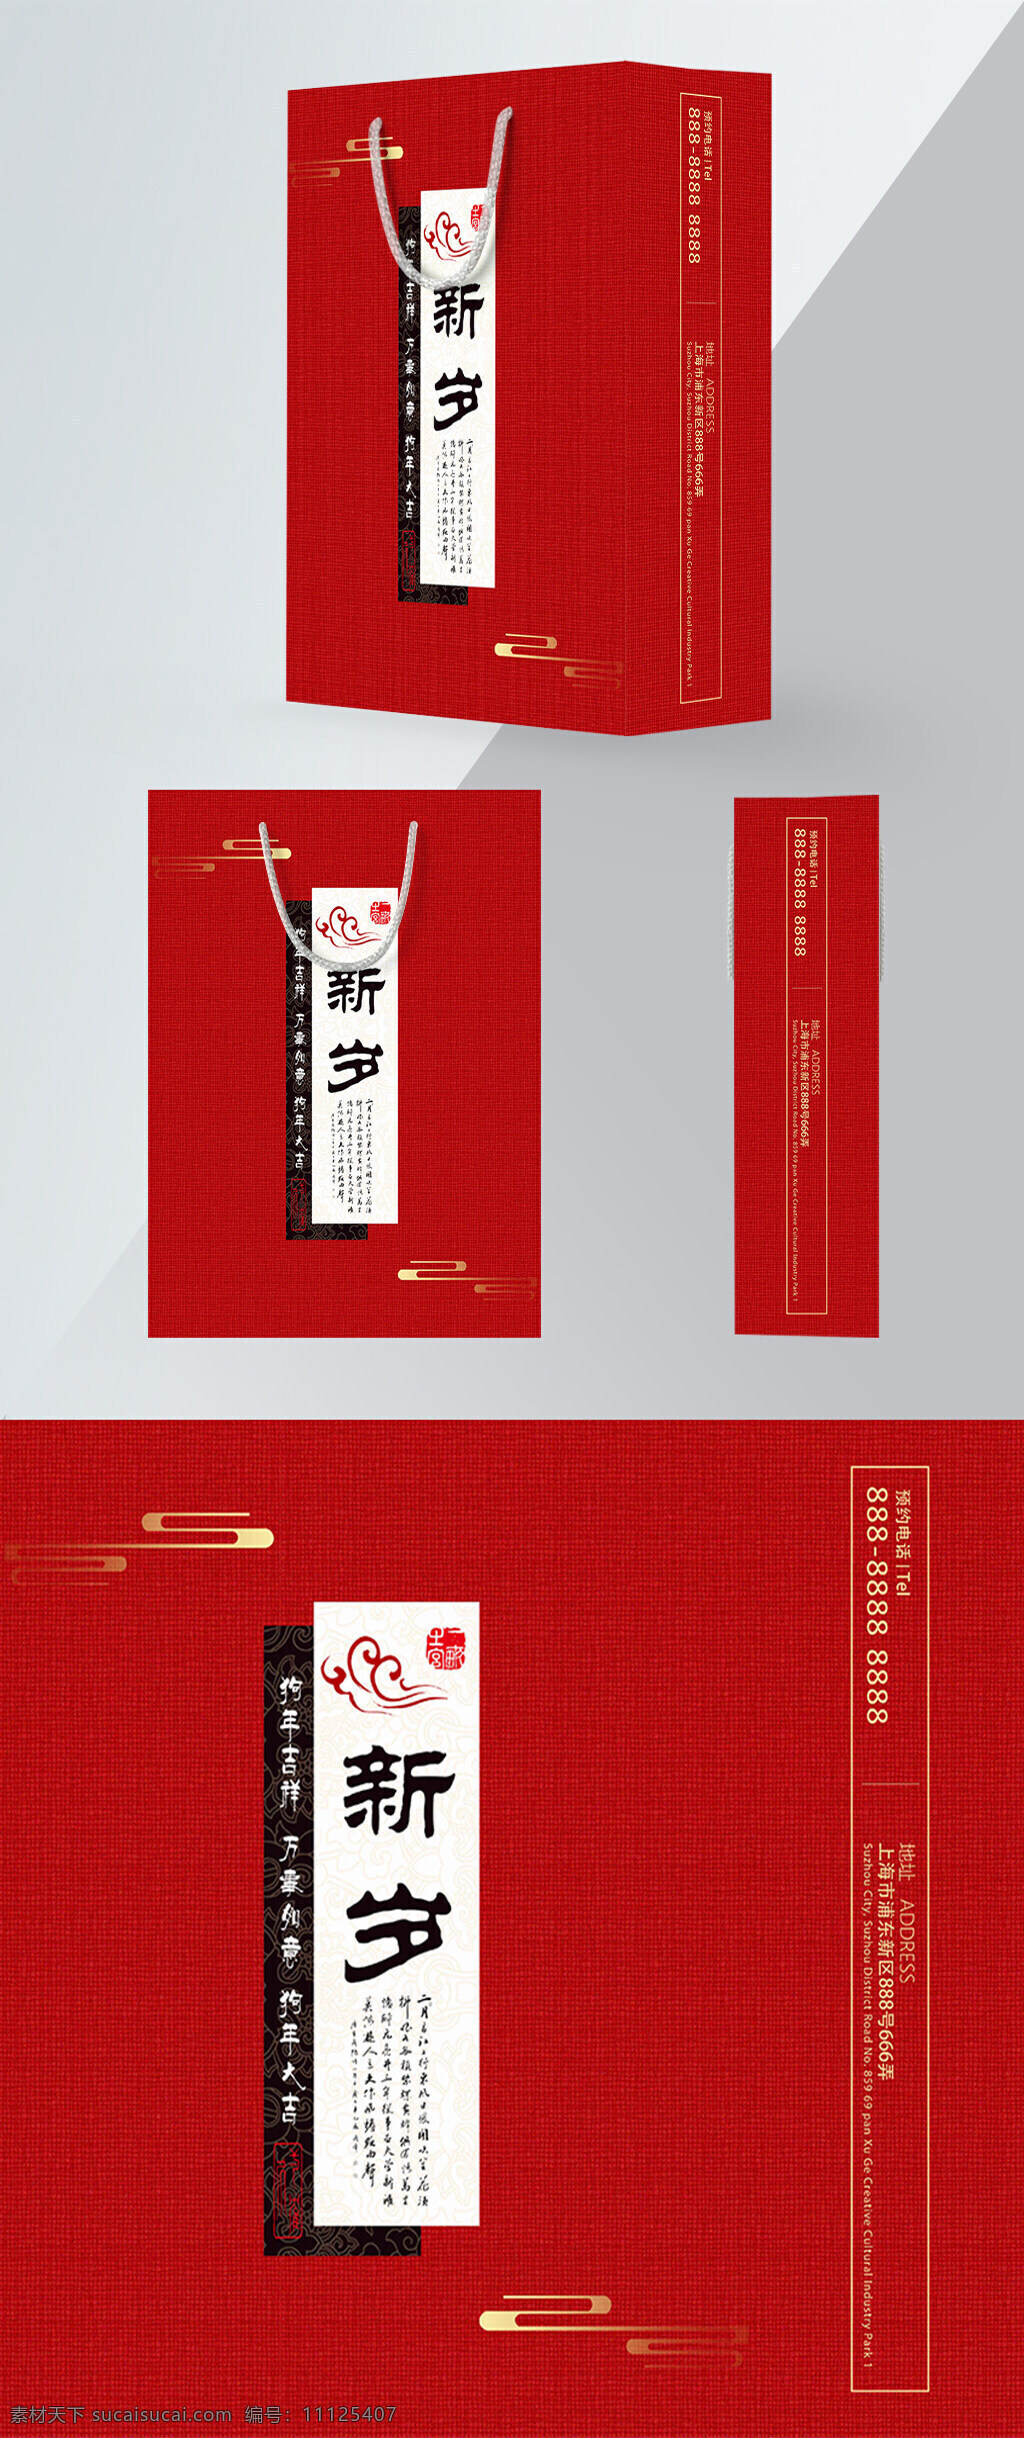 狗年 年货 特产 新年 中国风 精品 手提袋 红色 中 国风 新岁 包装设计